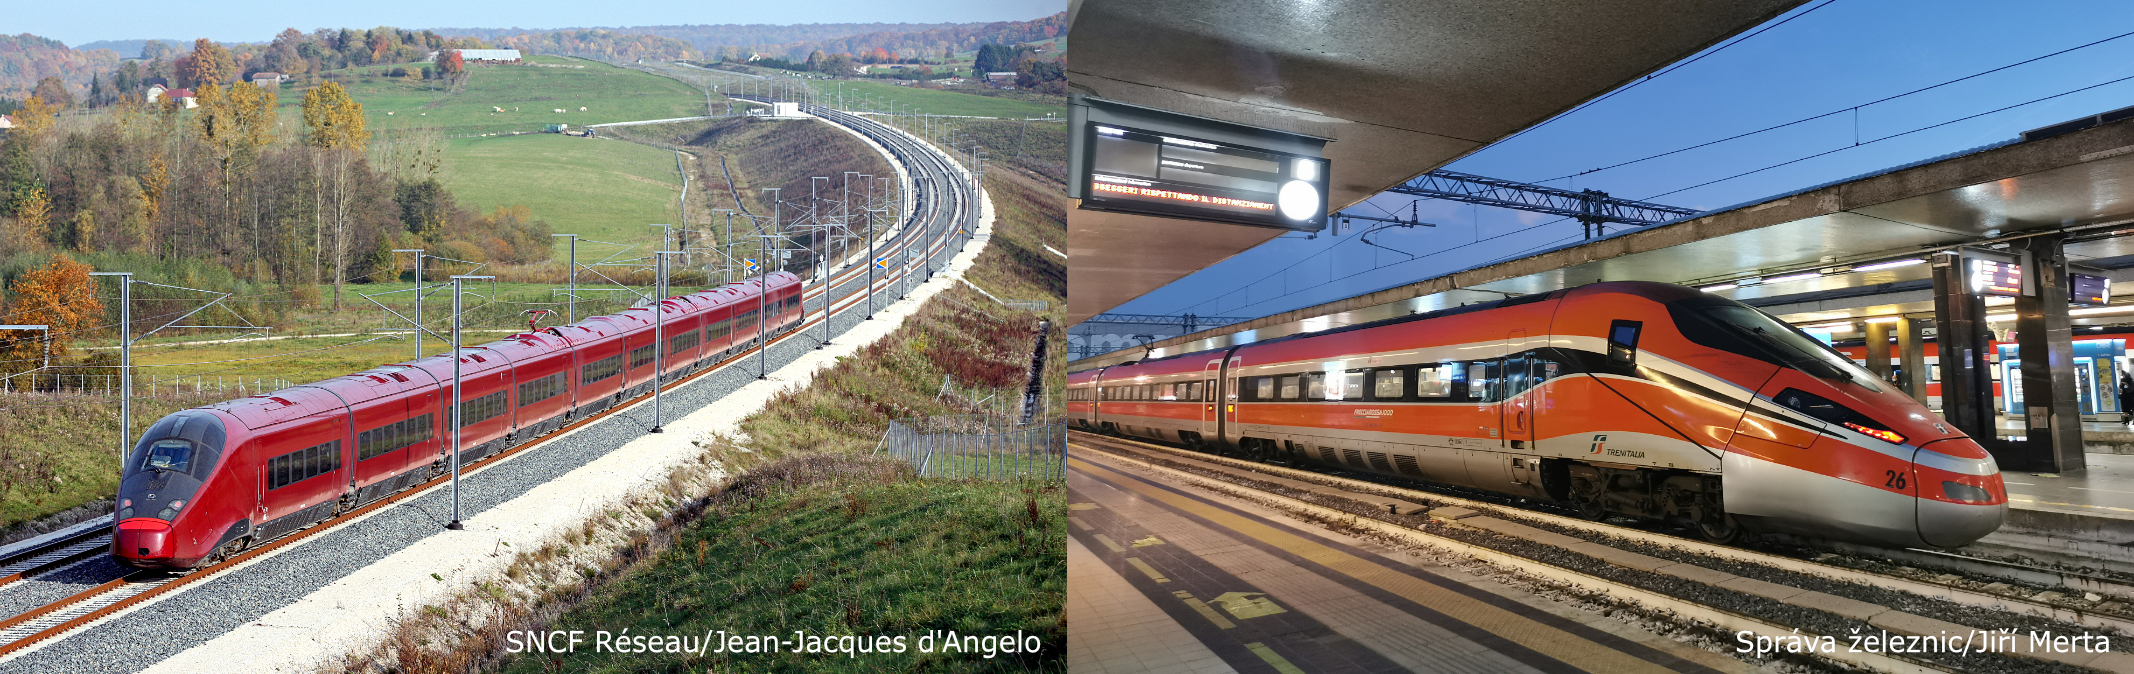 Vysokorychlostní vlaky z Itálie